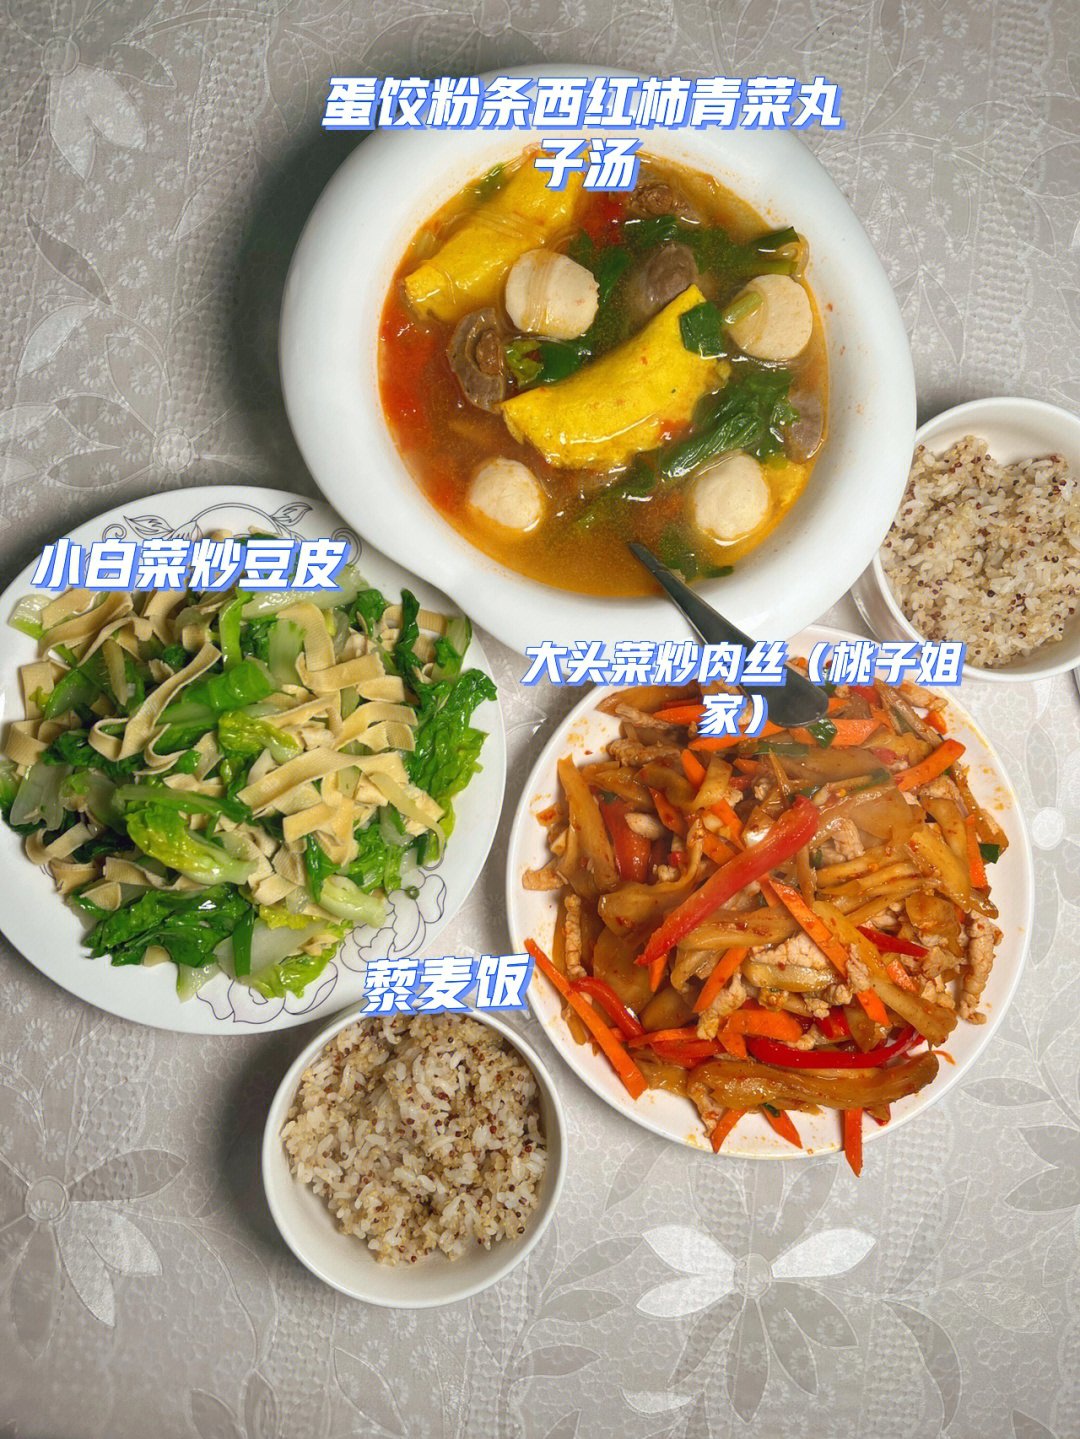 今日午餐:藜麦饭大头菜炒肉丝小白菜炒豆皮蛋饺粉条西红柿青菜丸子汤